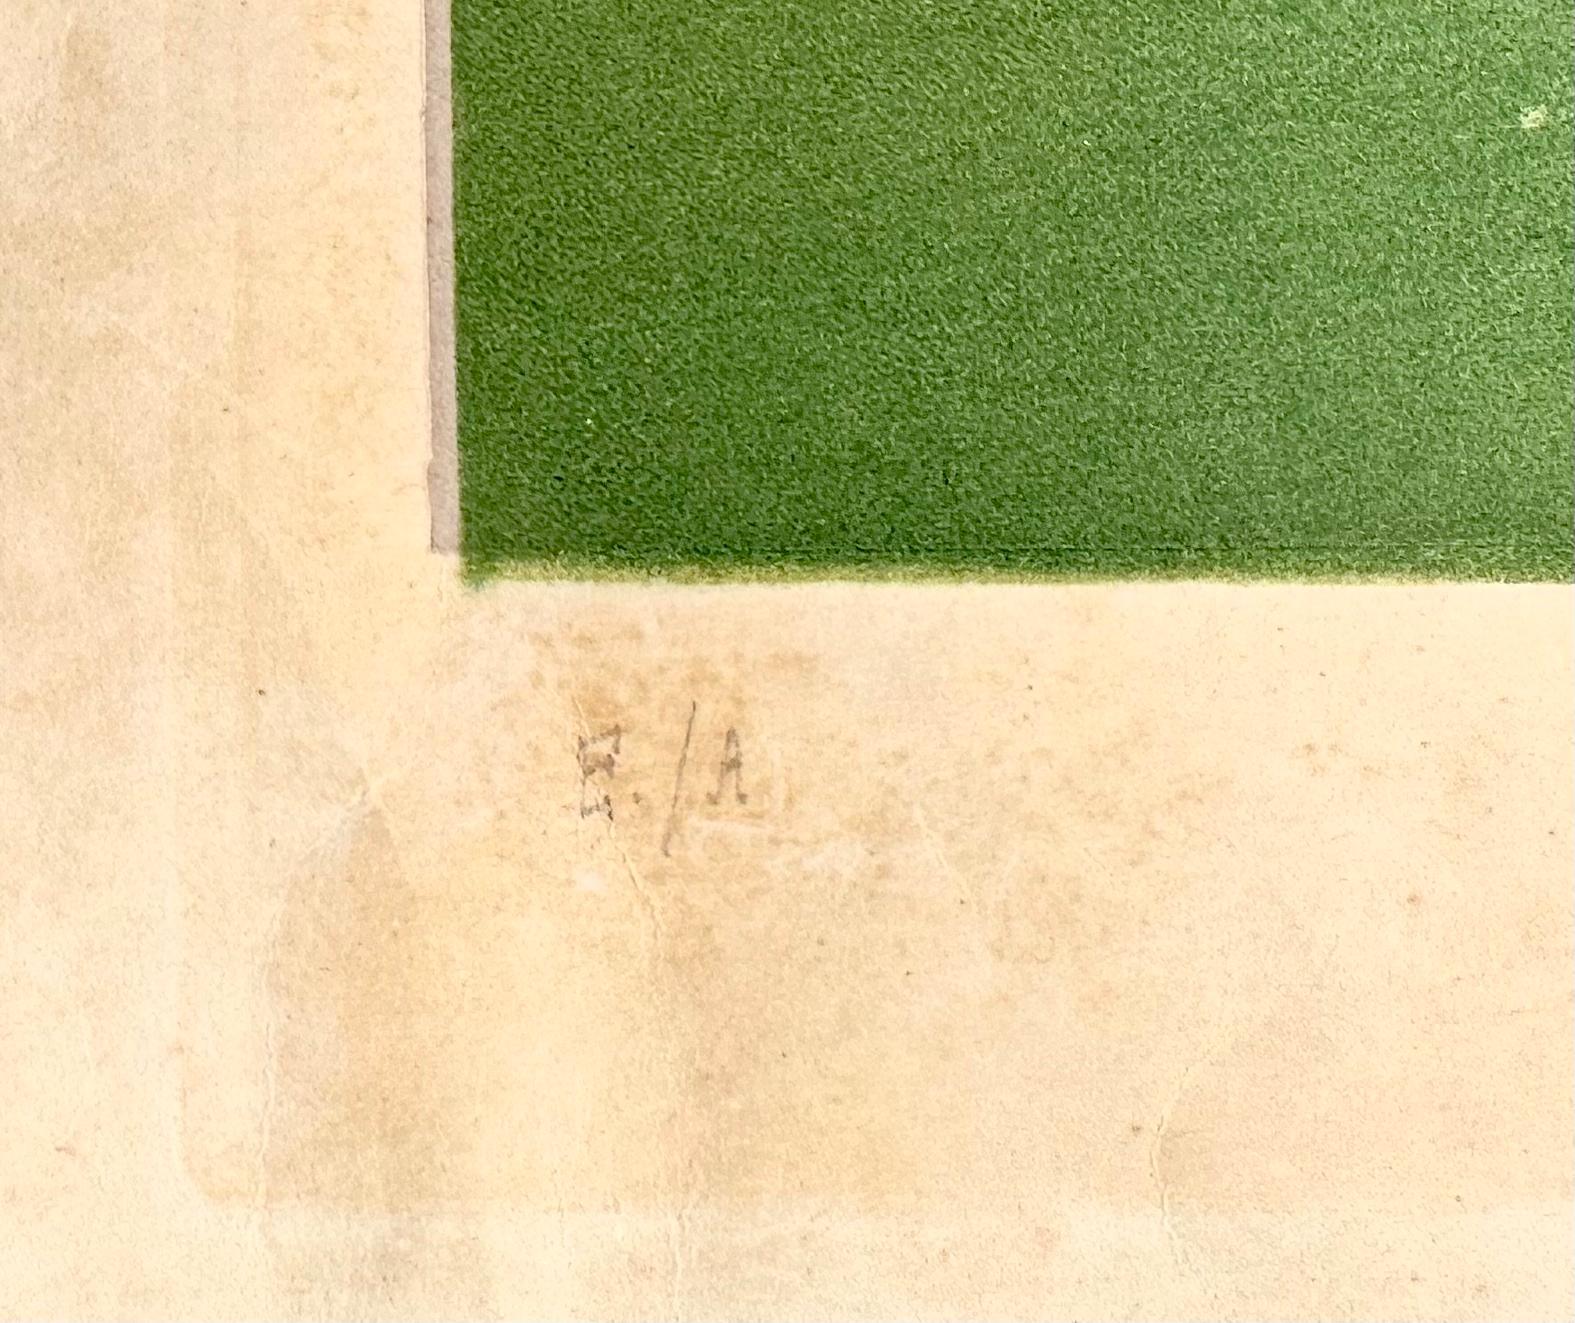 Pablo Picasso (d'Apres)- Le Petit Pierrot aux Fleurs
Farbaquatinta auf Chine Collé auf Japanpapierunterlage, ca. 1960
Handsigniert mit Bleistift unten rechts.
Vermerk E.A , unten links. Eine Epreuve d'Artiste neben der nummerierten Auflage von 100